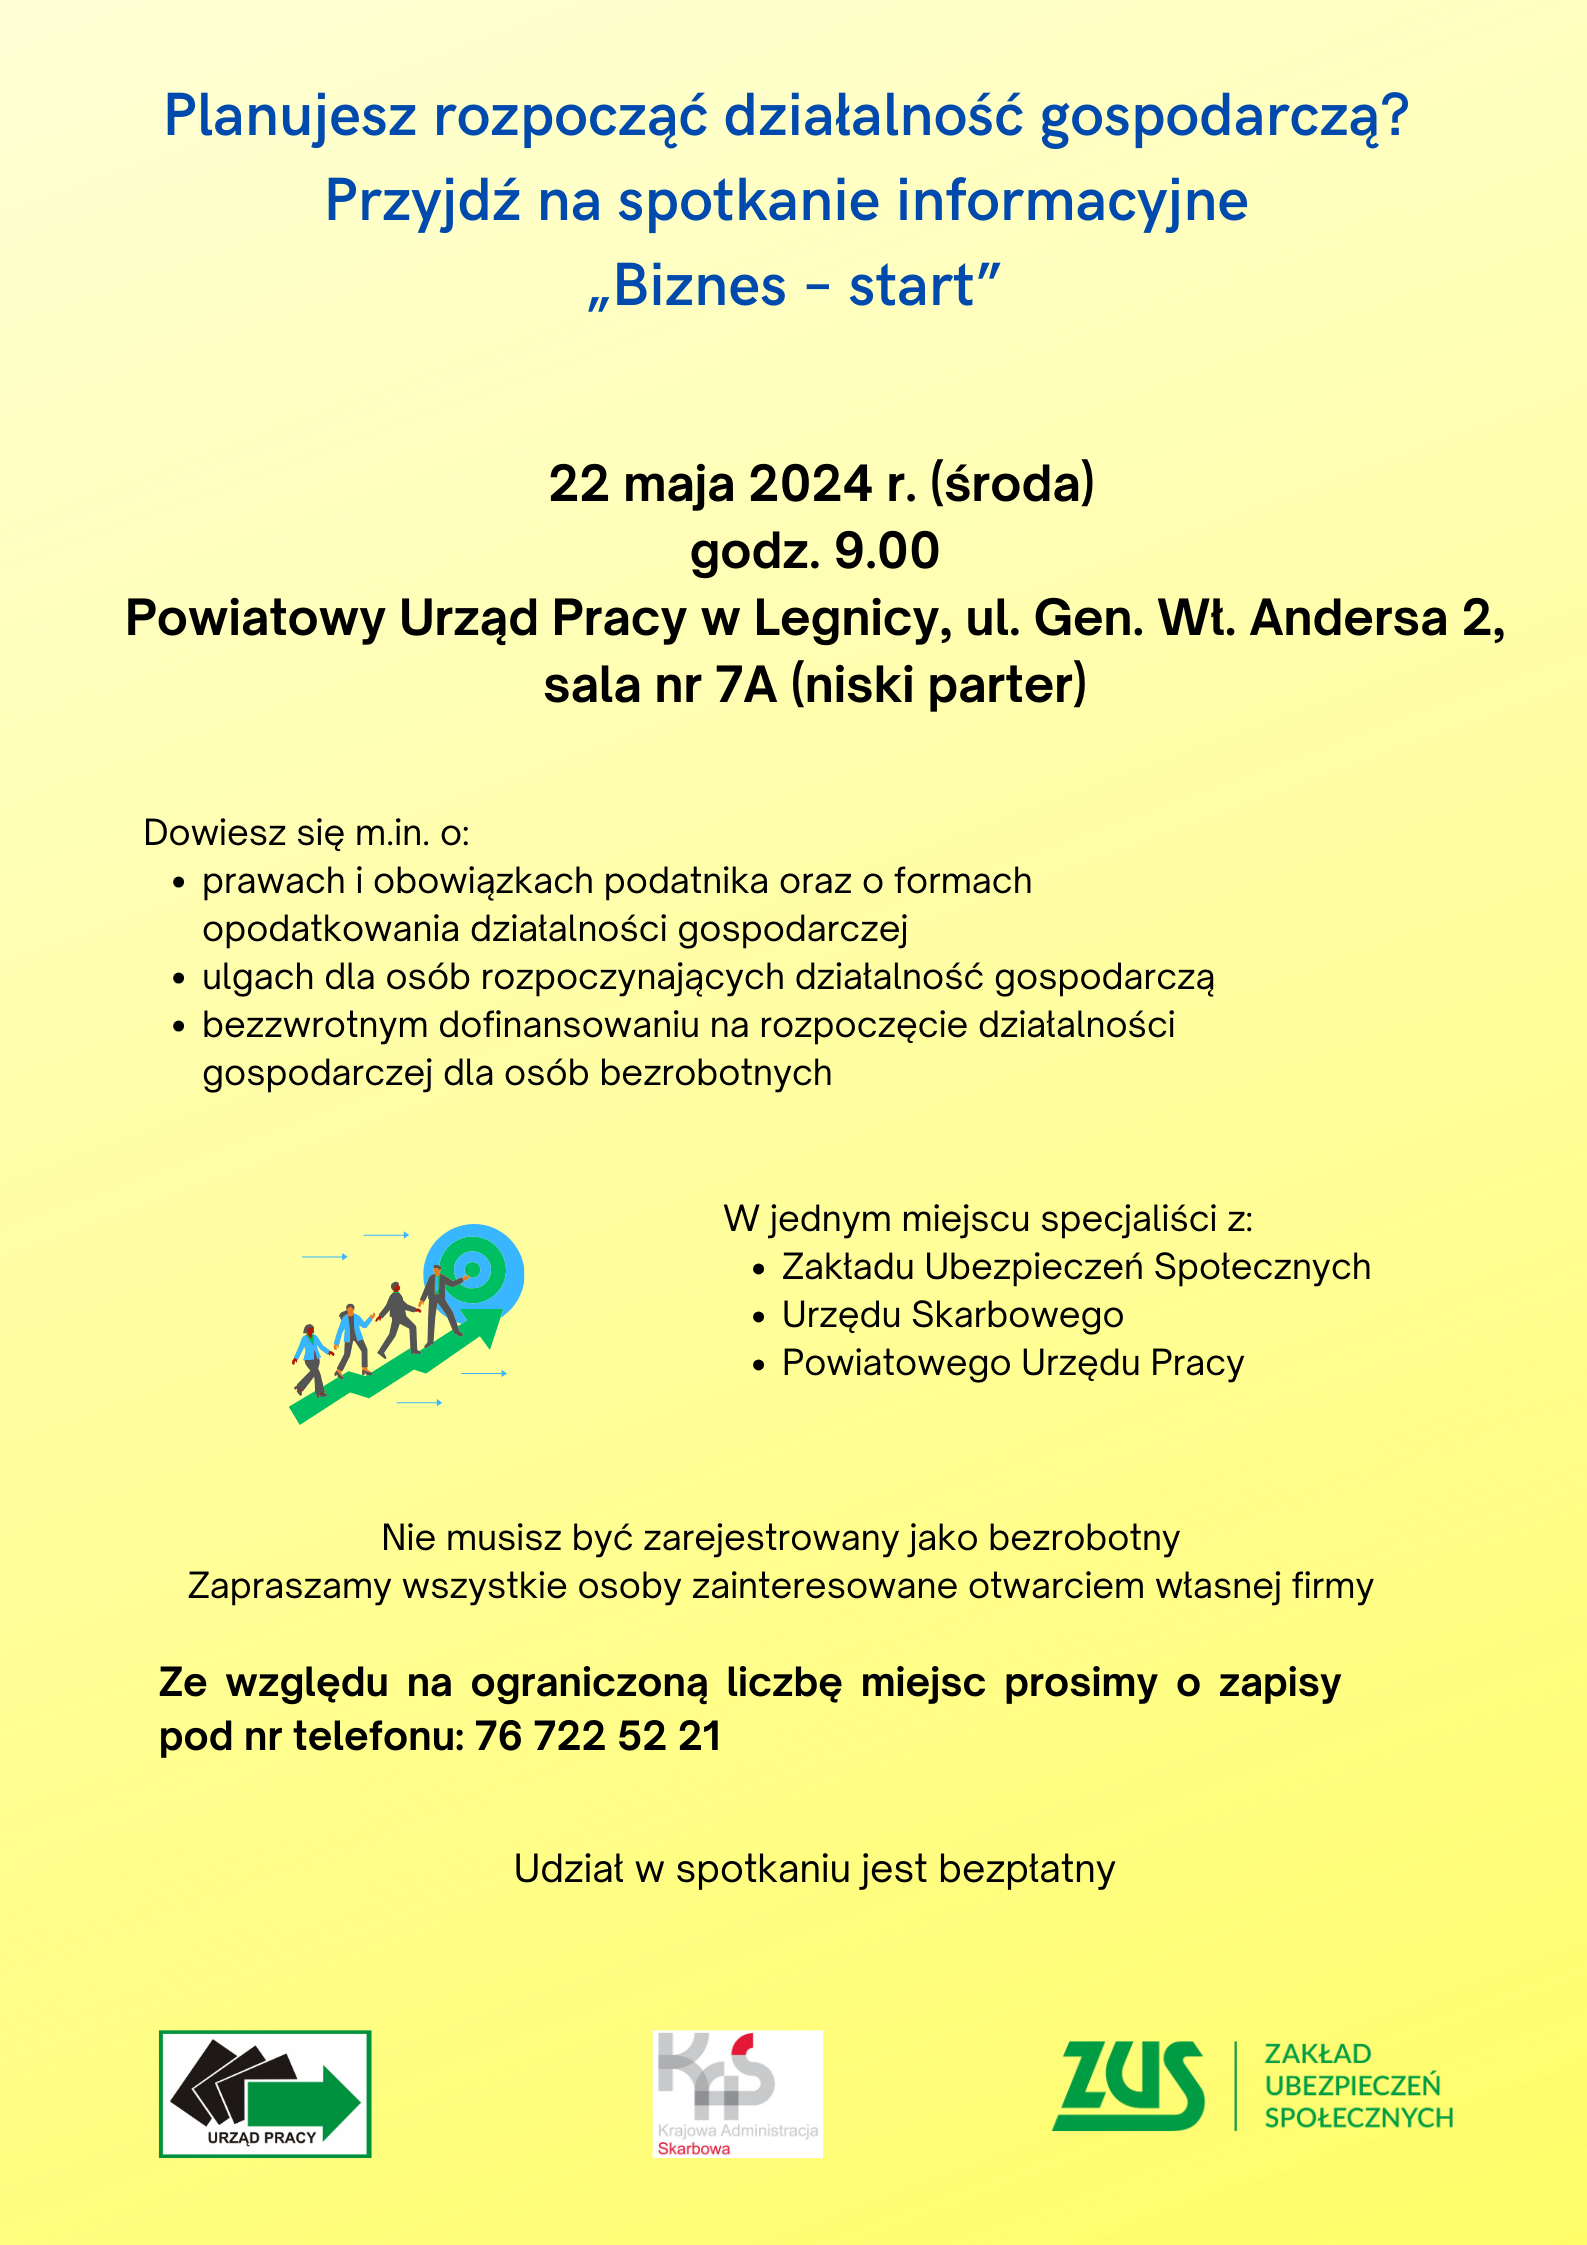 Zaproszenie na spotkanie z ekspertami, którzy udzielą informacji na temat rozpoczęcia działalności gospodarczej. Spotkanie odbędzie się 22 maja 2024 w PUP w Legnicy.